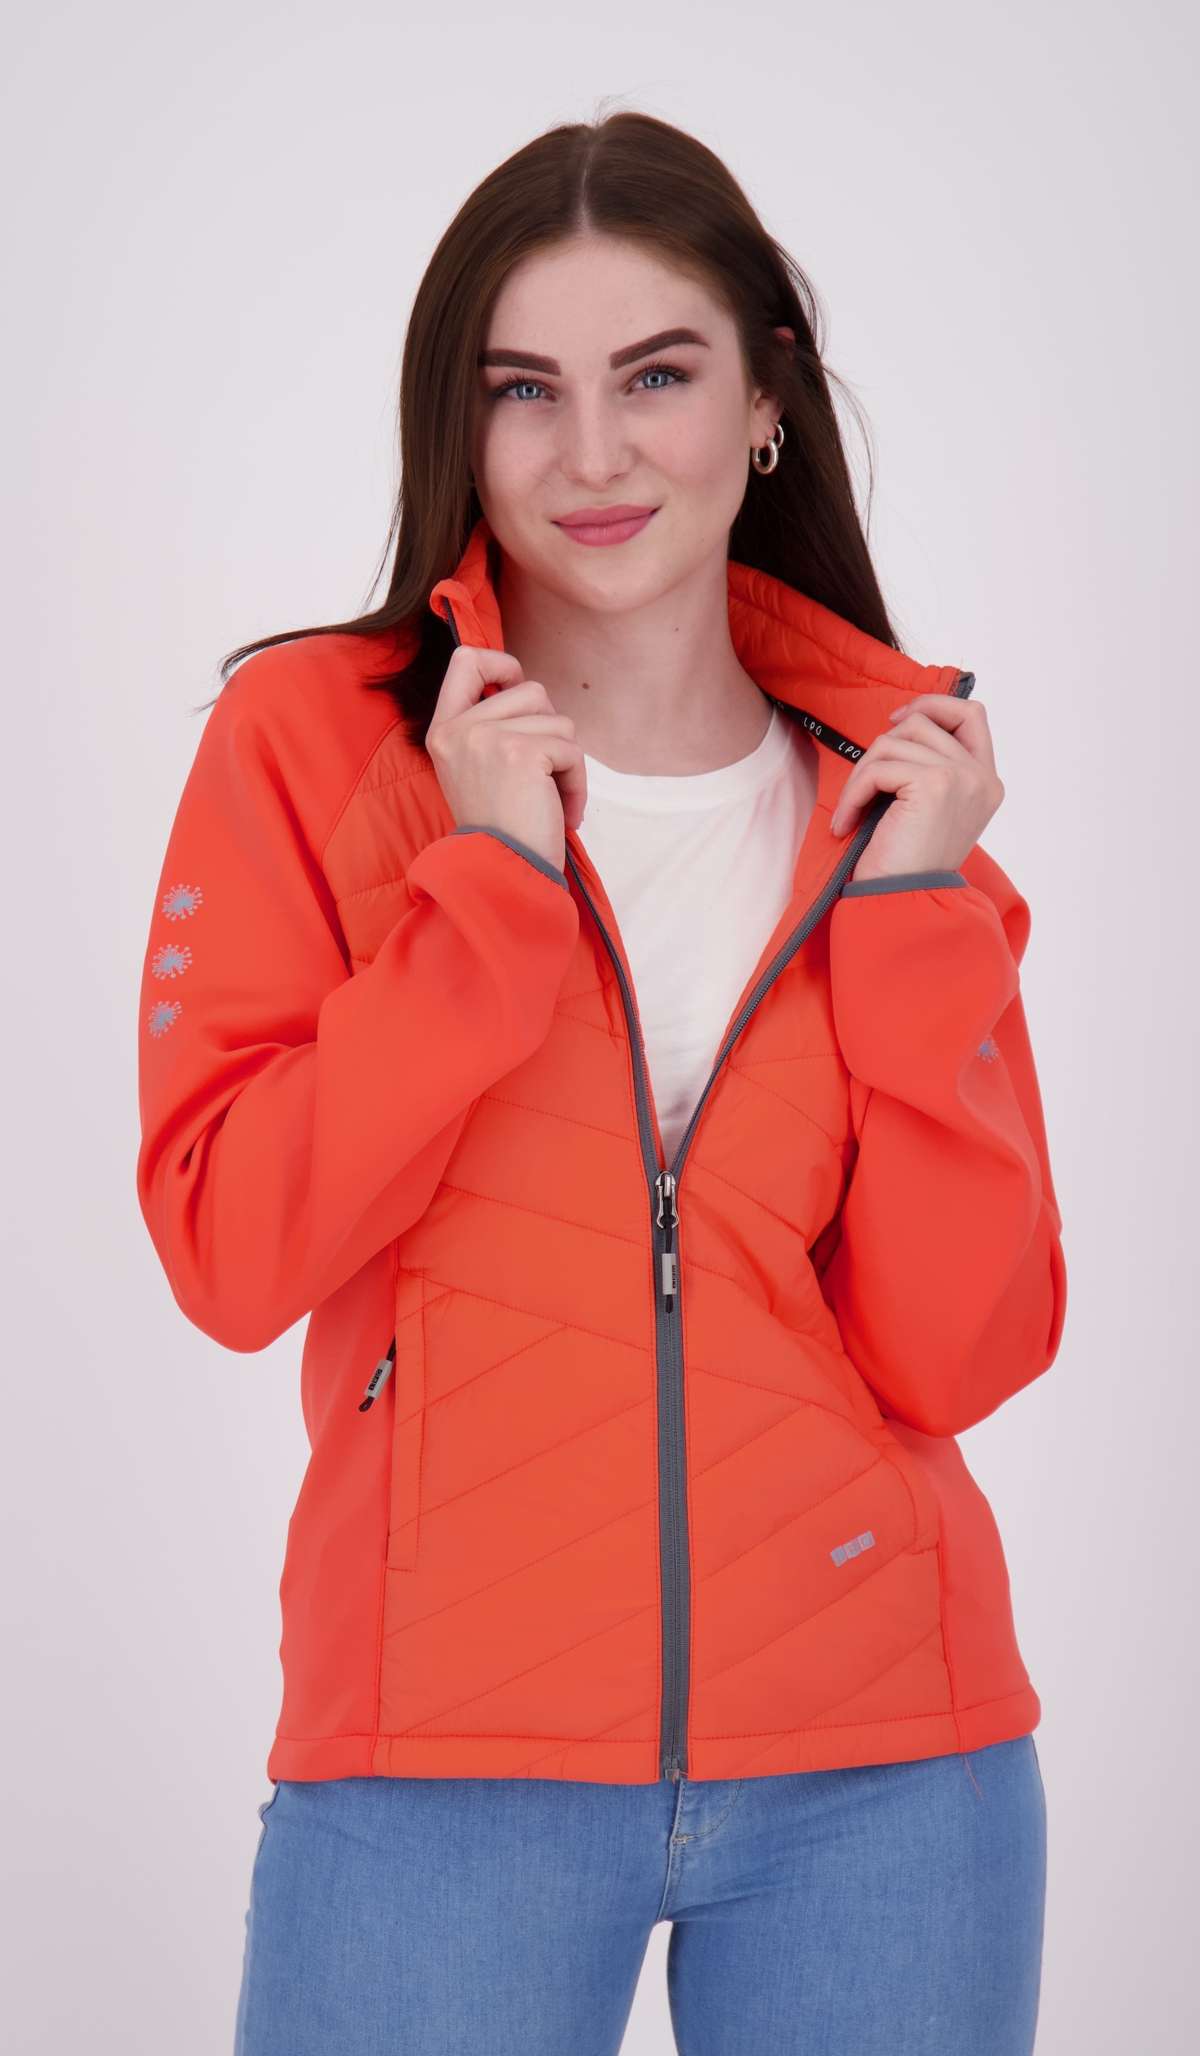 Флисовая куртка, мягкая гибридная флисовая куртка традиционного вида.